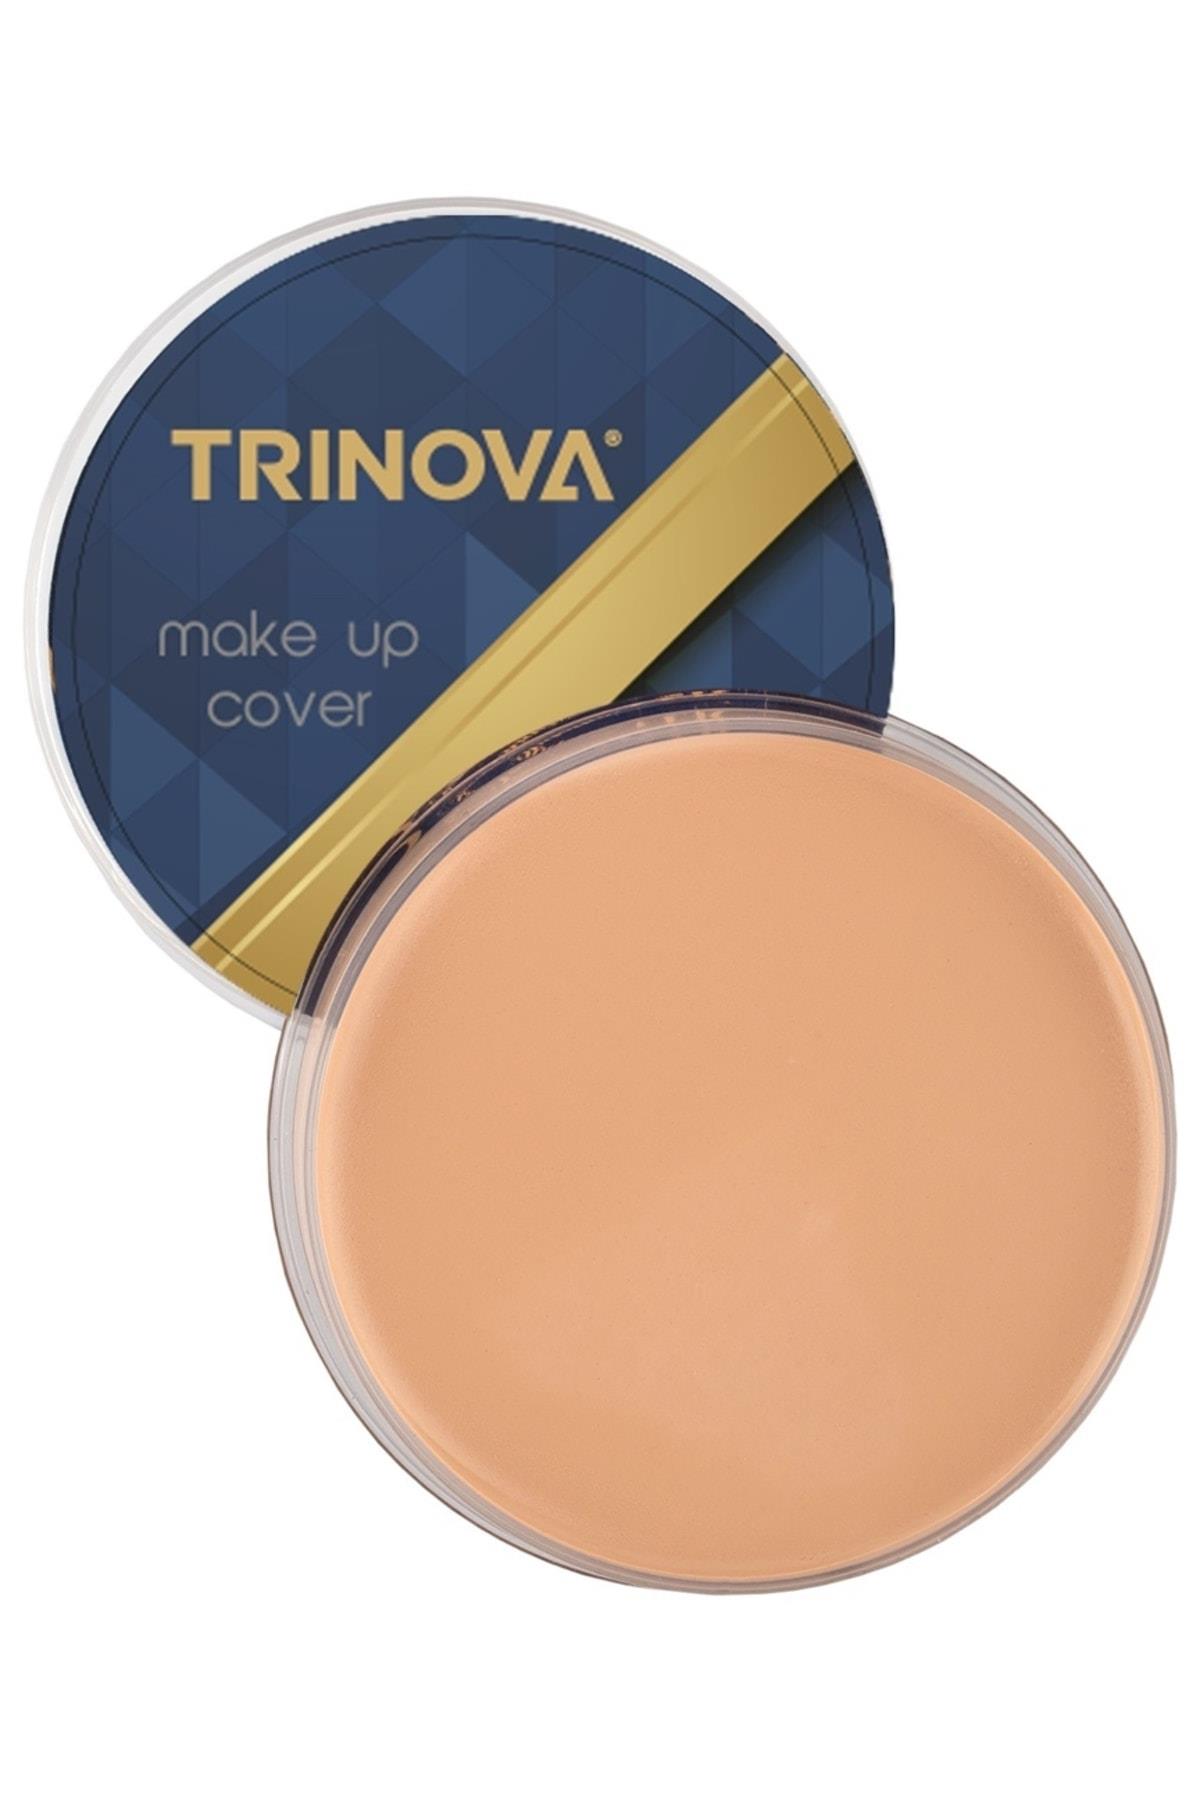 Trinova Makeup Cover Porselen Fondöten | Kozmorosa